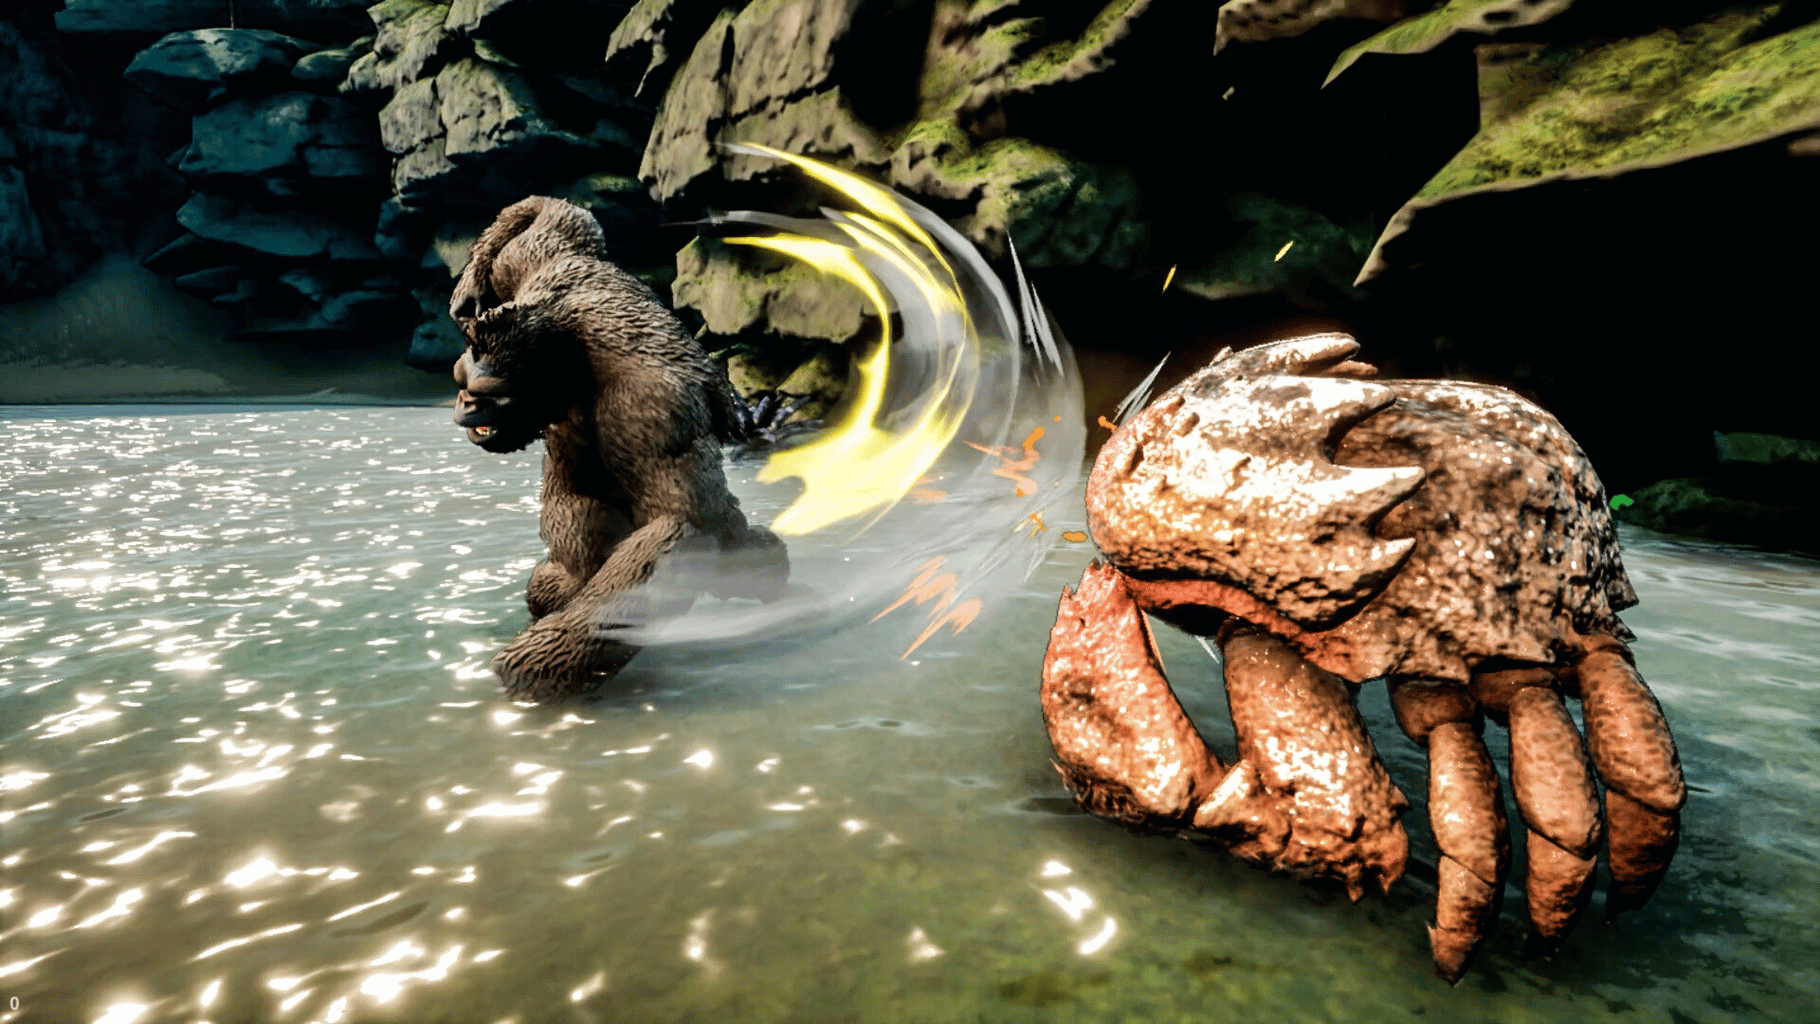 Skull Island: Rise of Kong está sendo considerado como o pior jogo de 2023